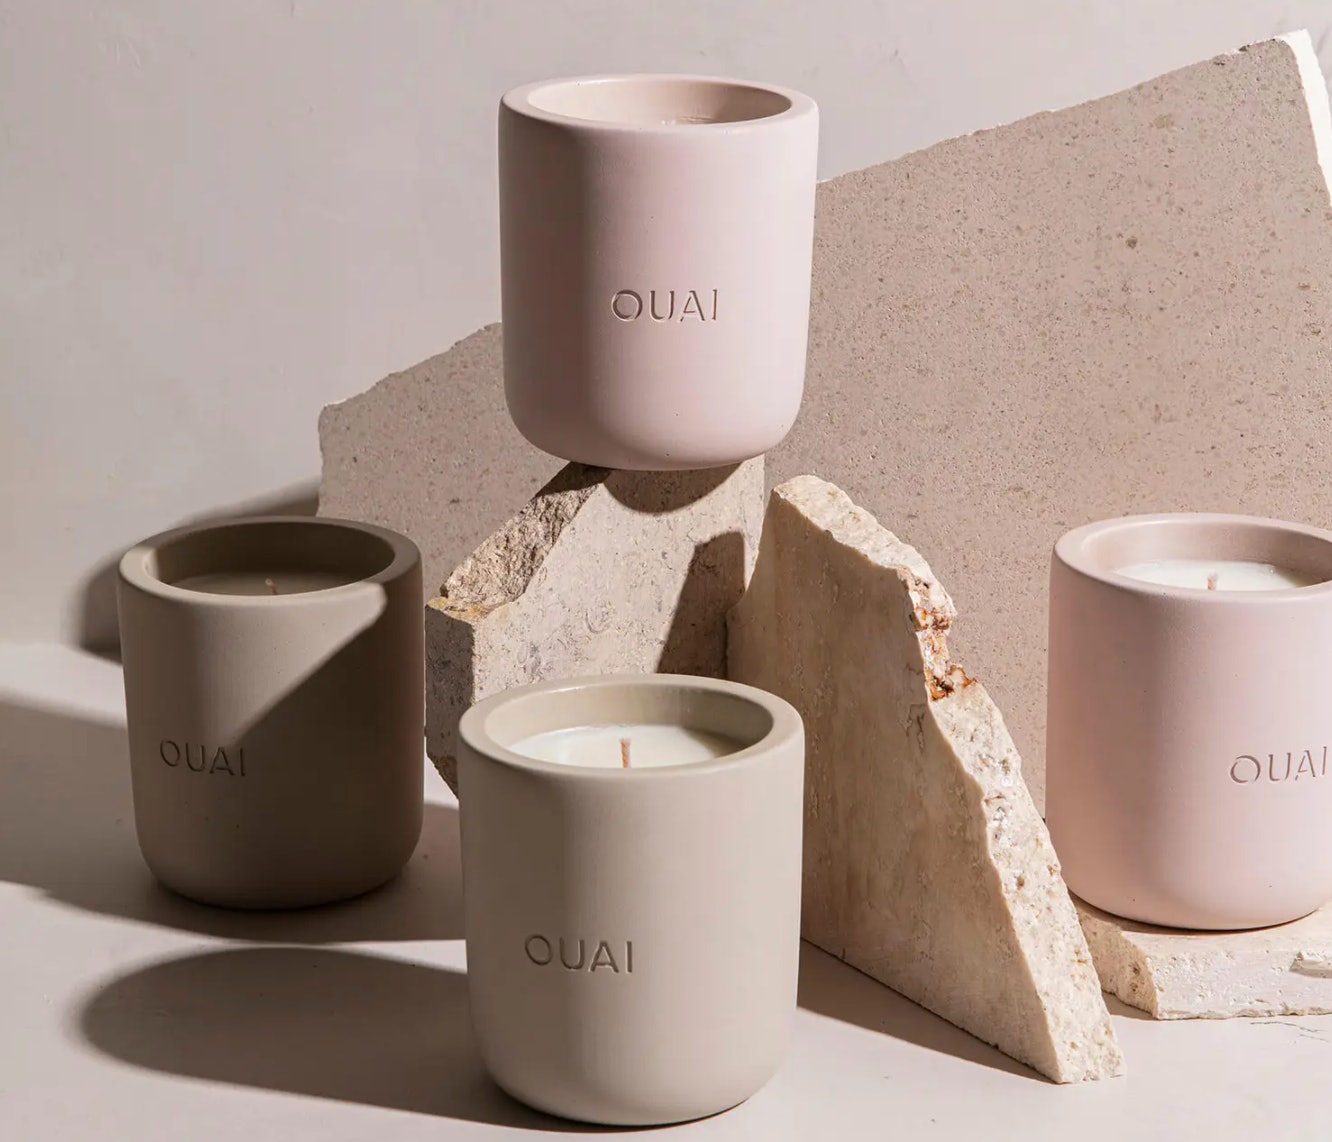 Cult Beauty Brand OUAI upravo je lansirao svijeće u svojim prepoznatljivim mirisima